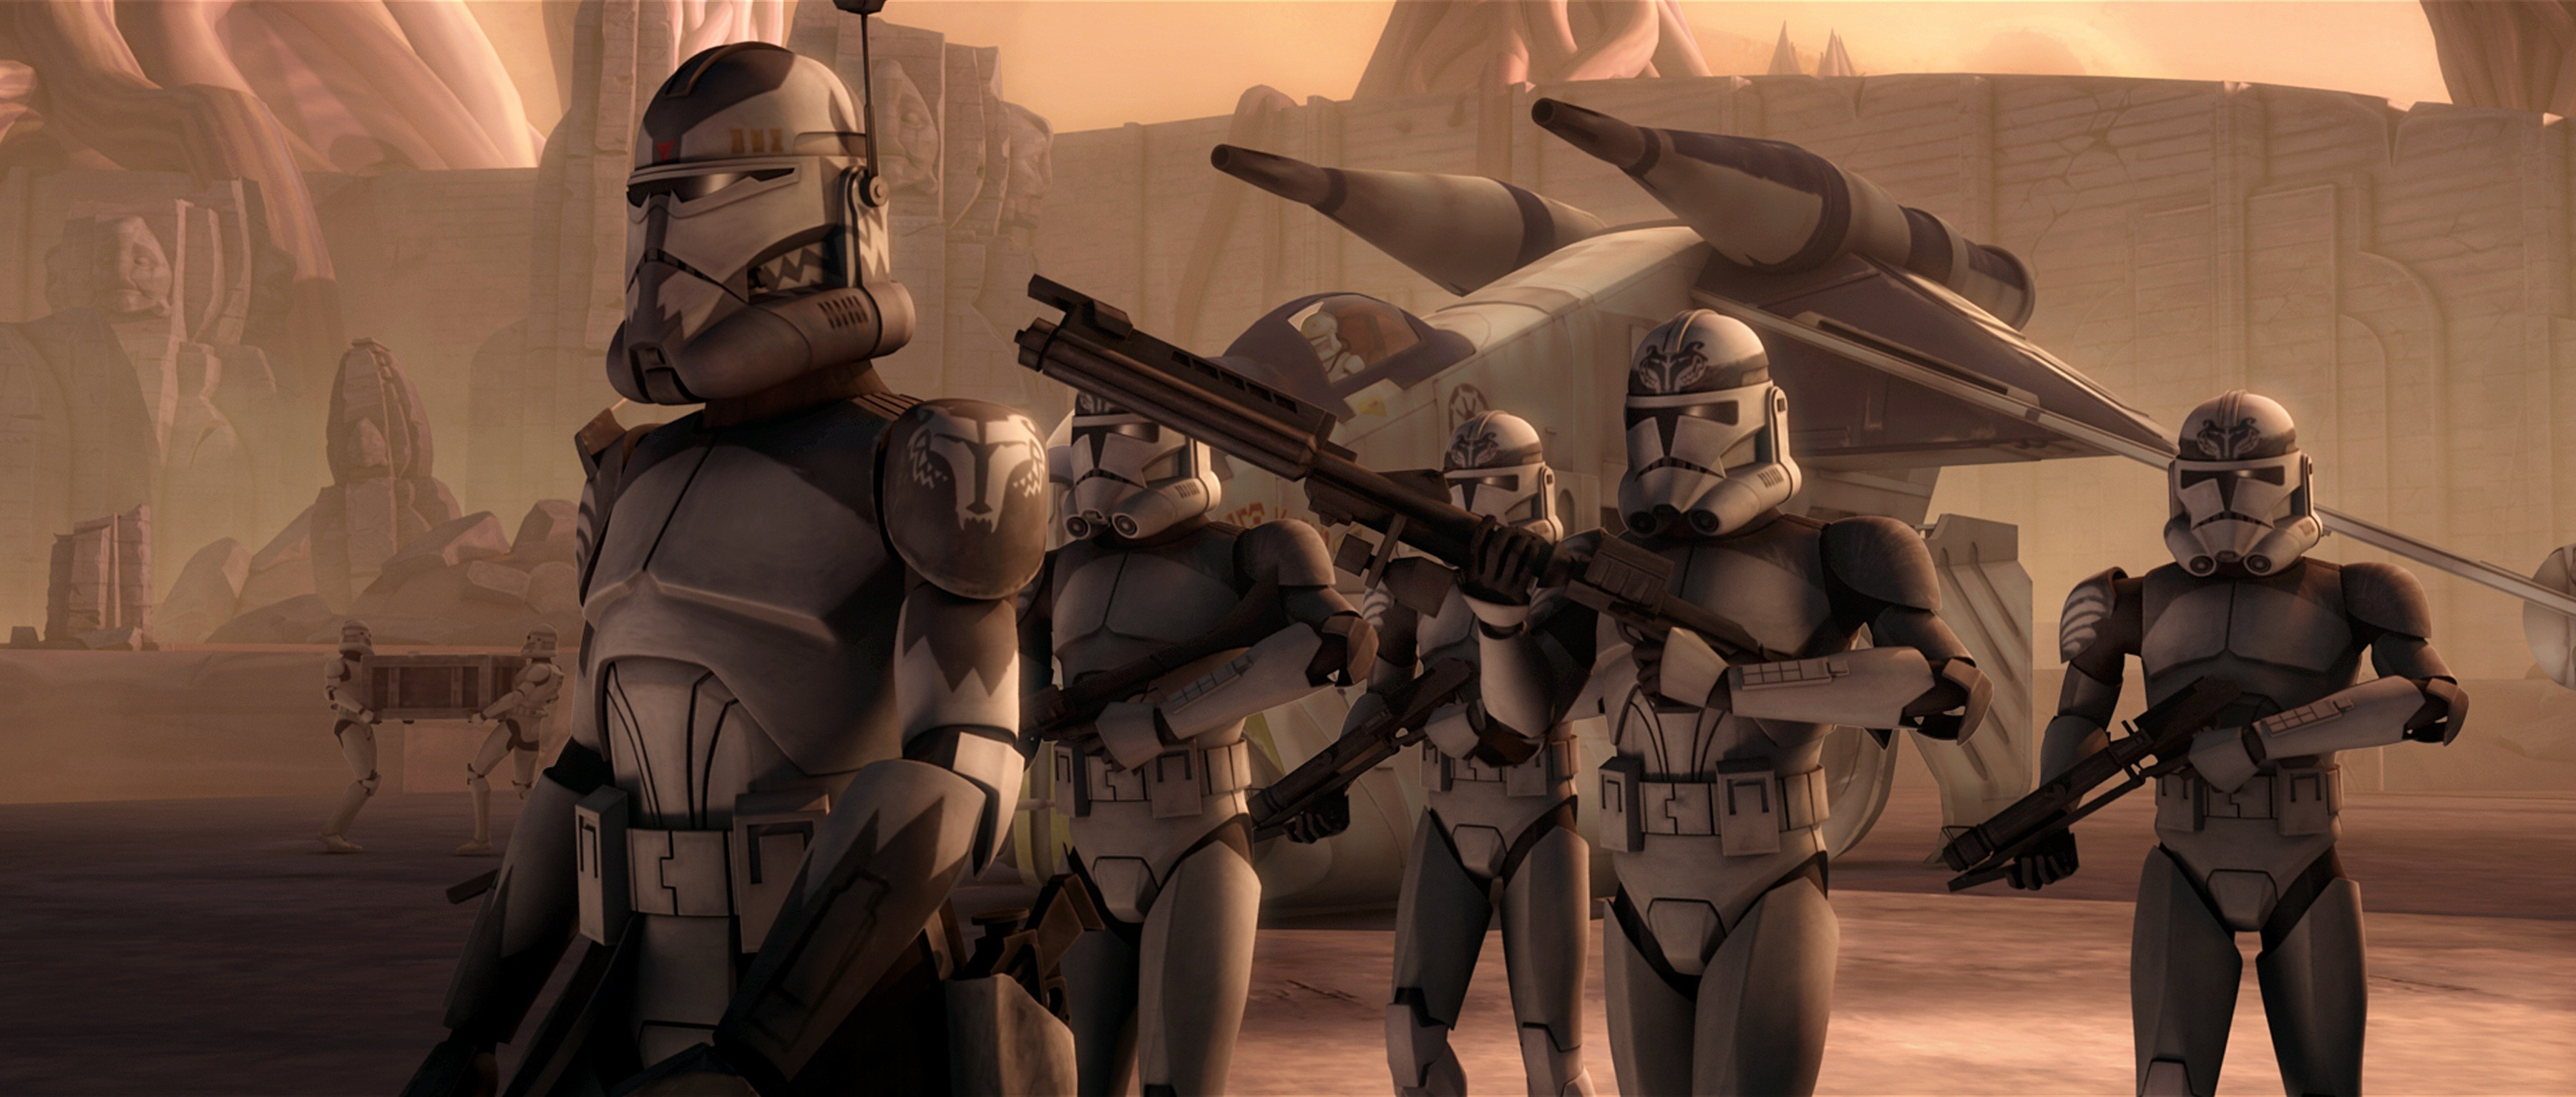 fondo de pantalla de star wars trooper,mecha,personaje de ficción,máquina,animación,cg artwork